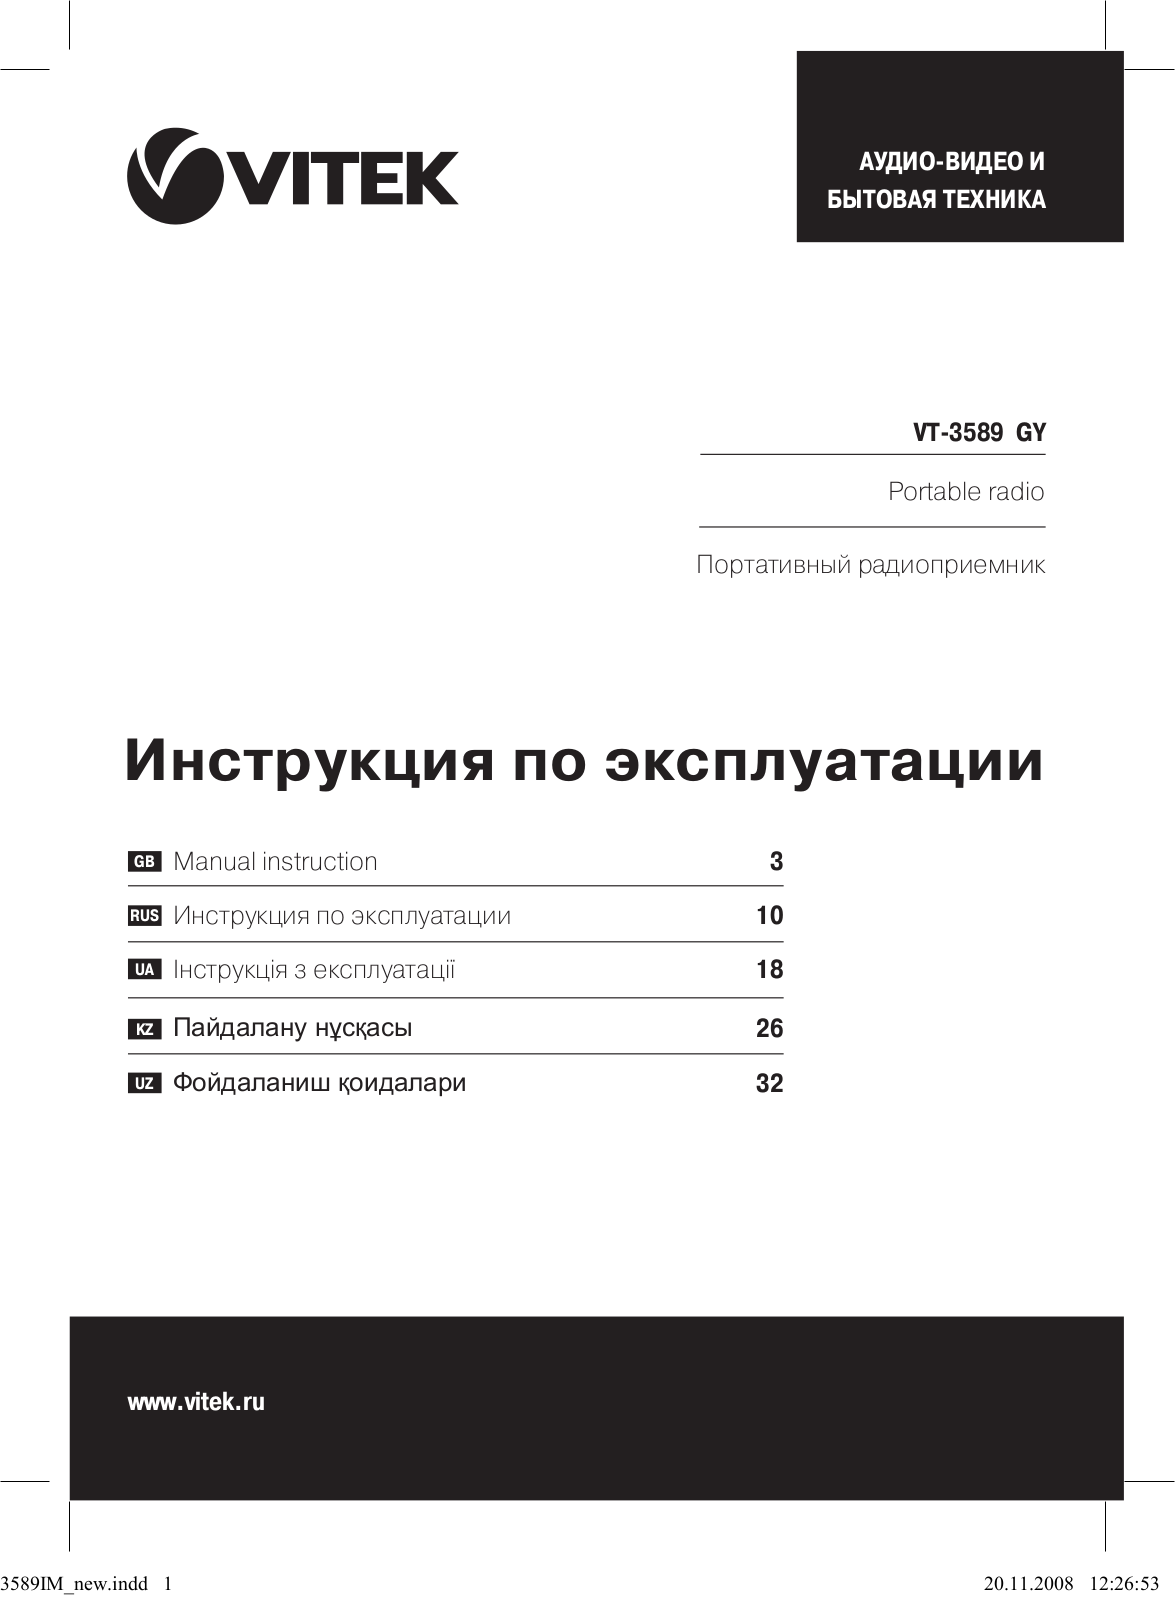 Vitek VT-3589 GY User Manual